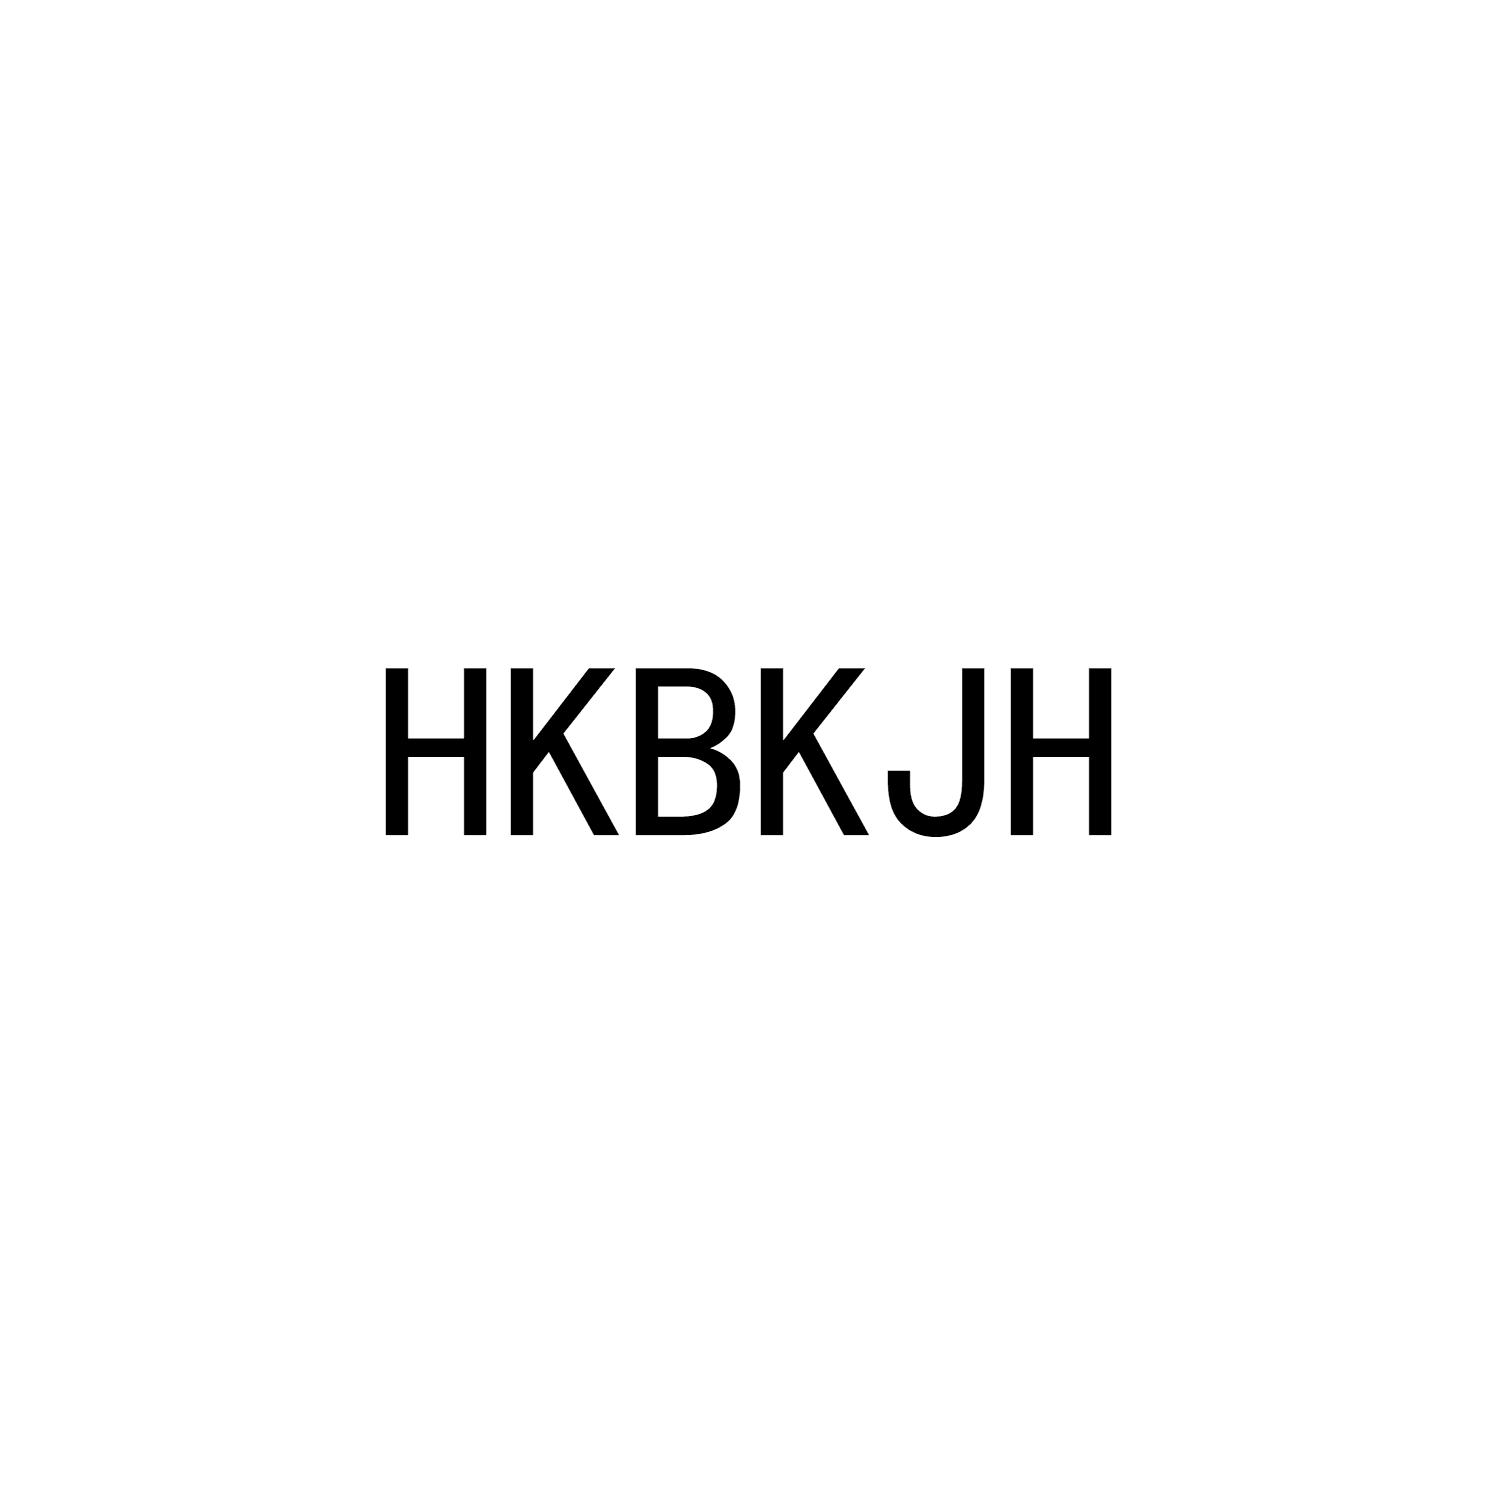 李敏商标HKBKJH（30类）商标转让多少钱？